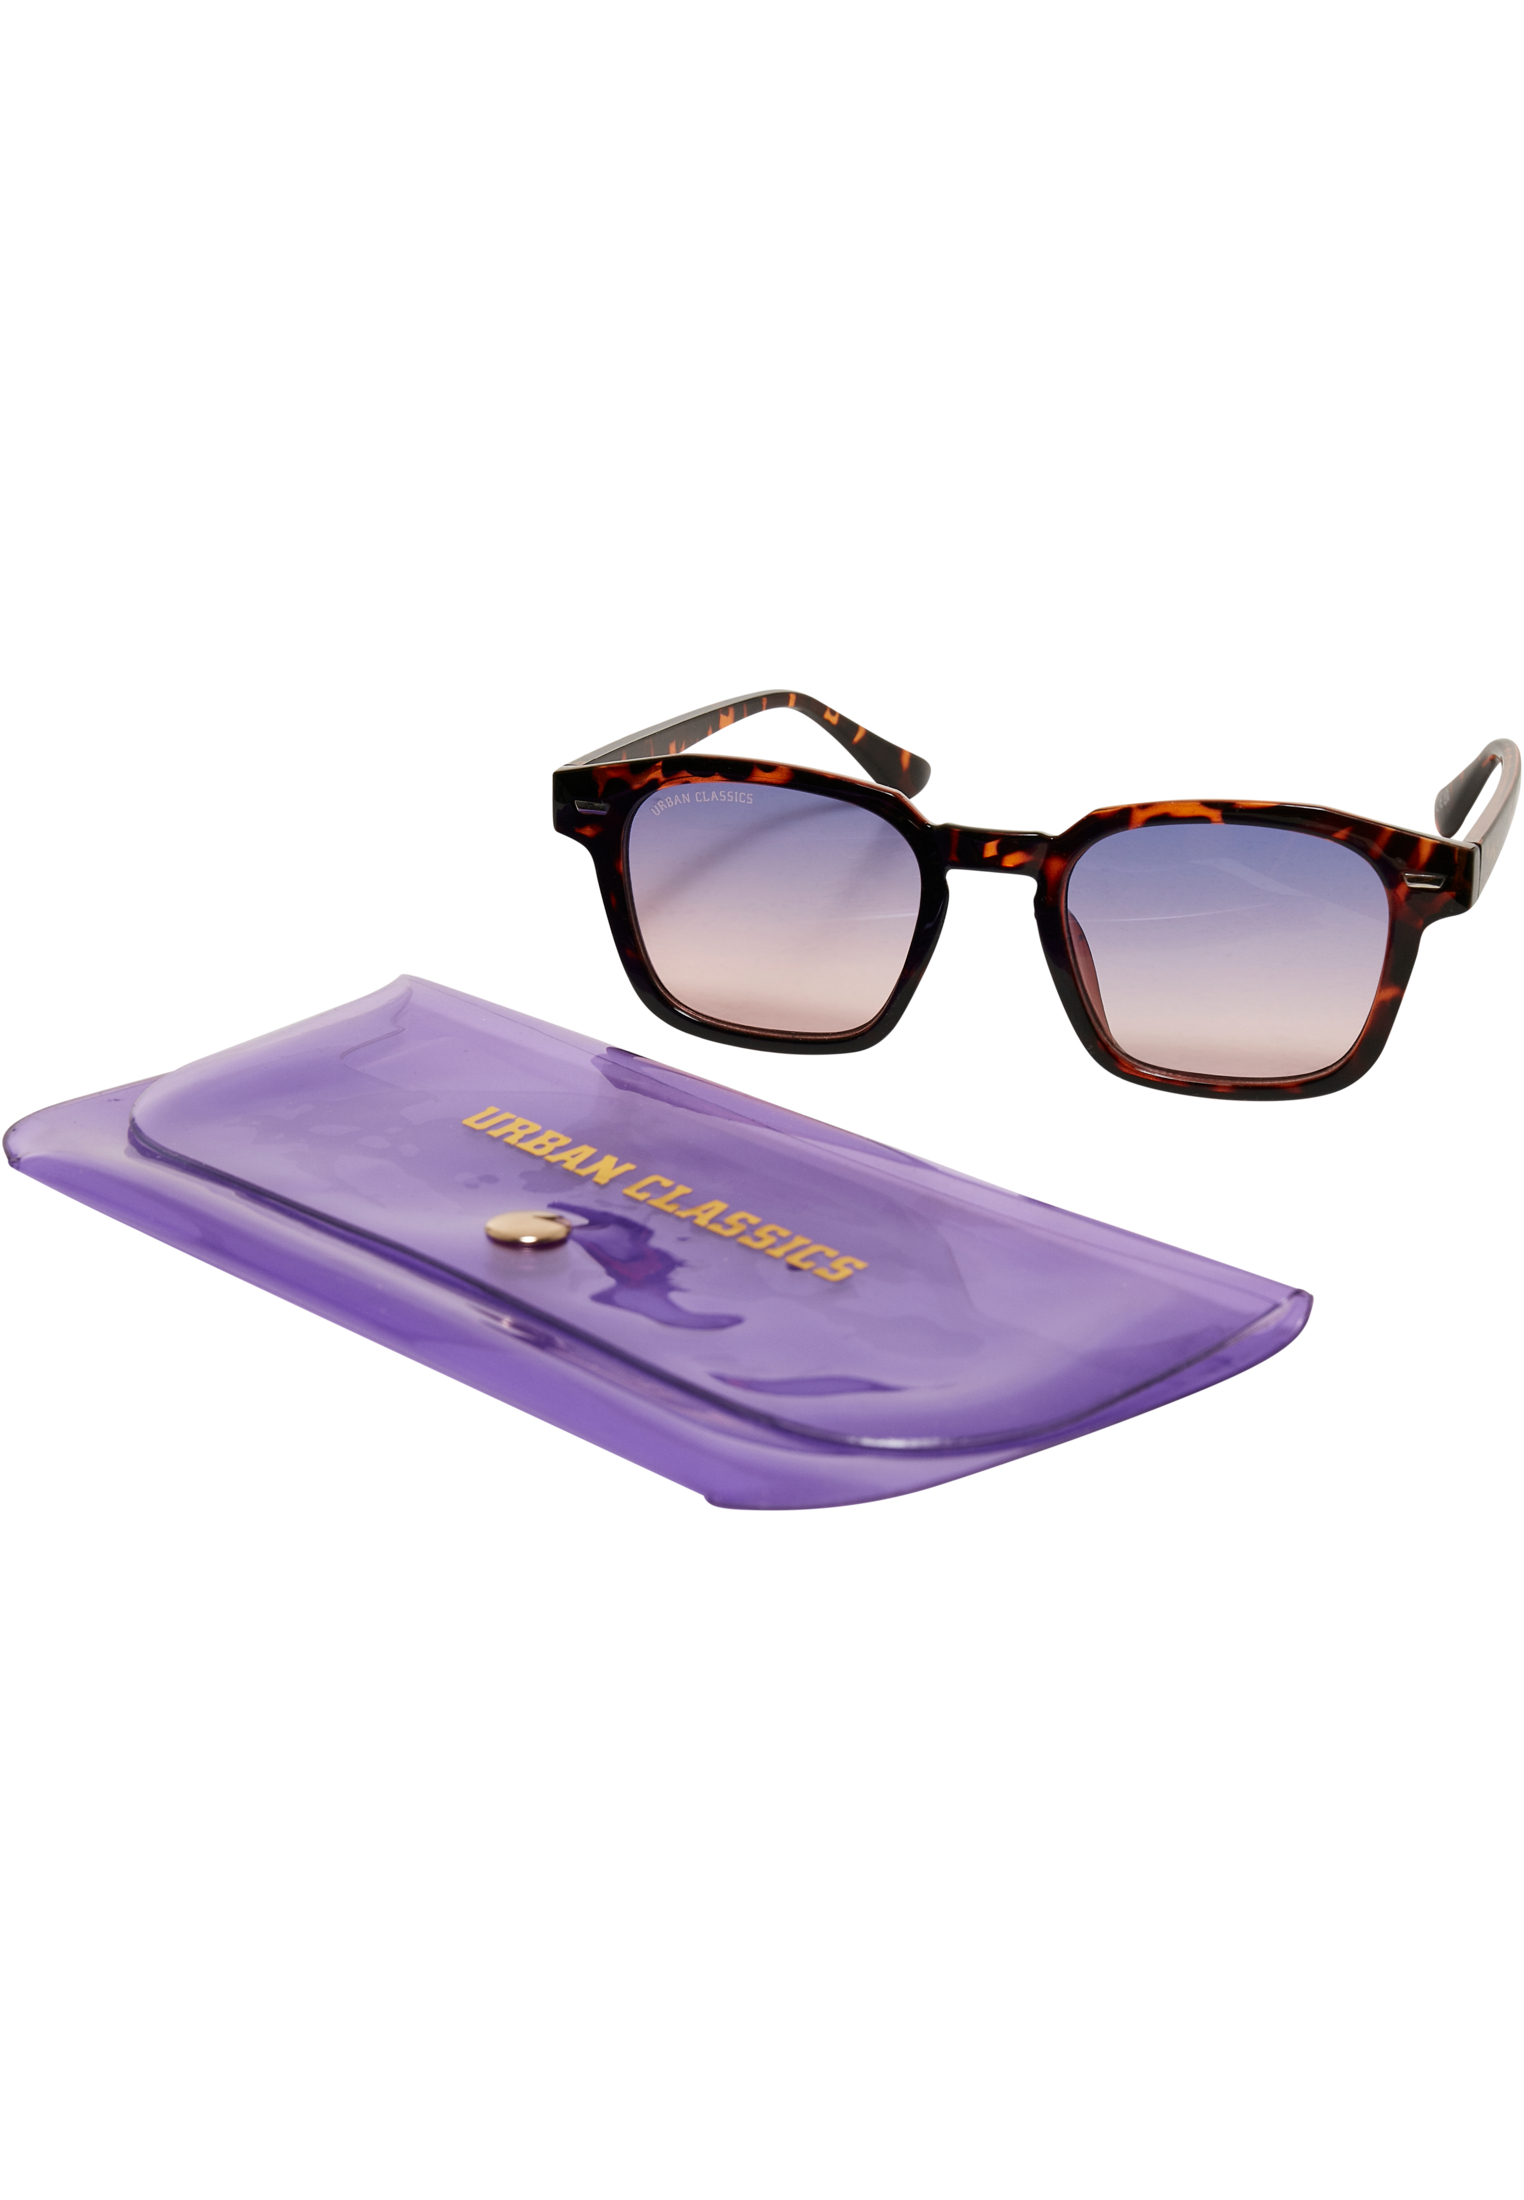 Case-TB5210 Sunglasses With Maui